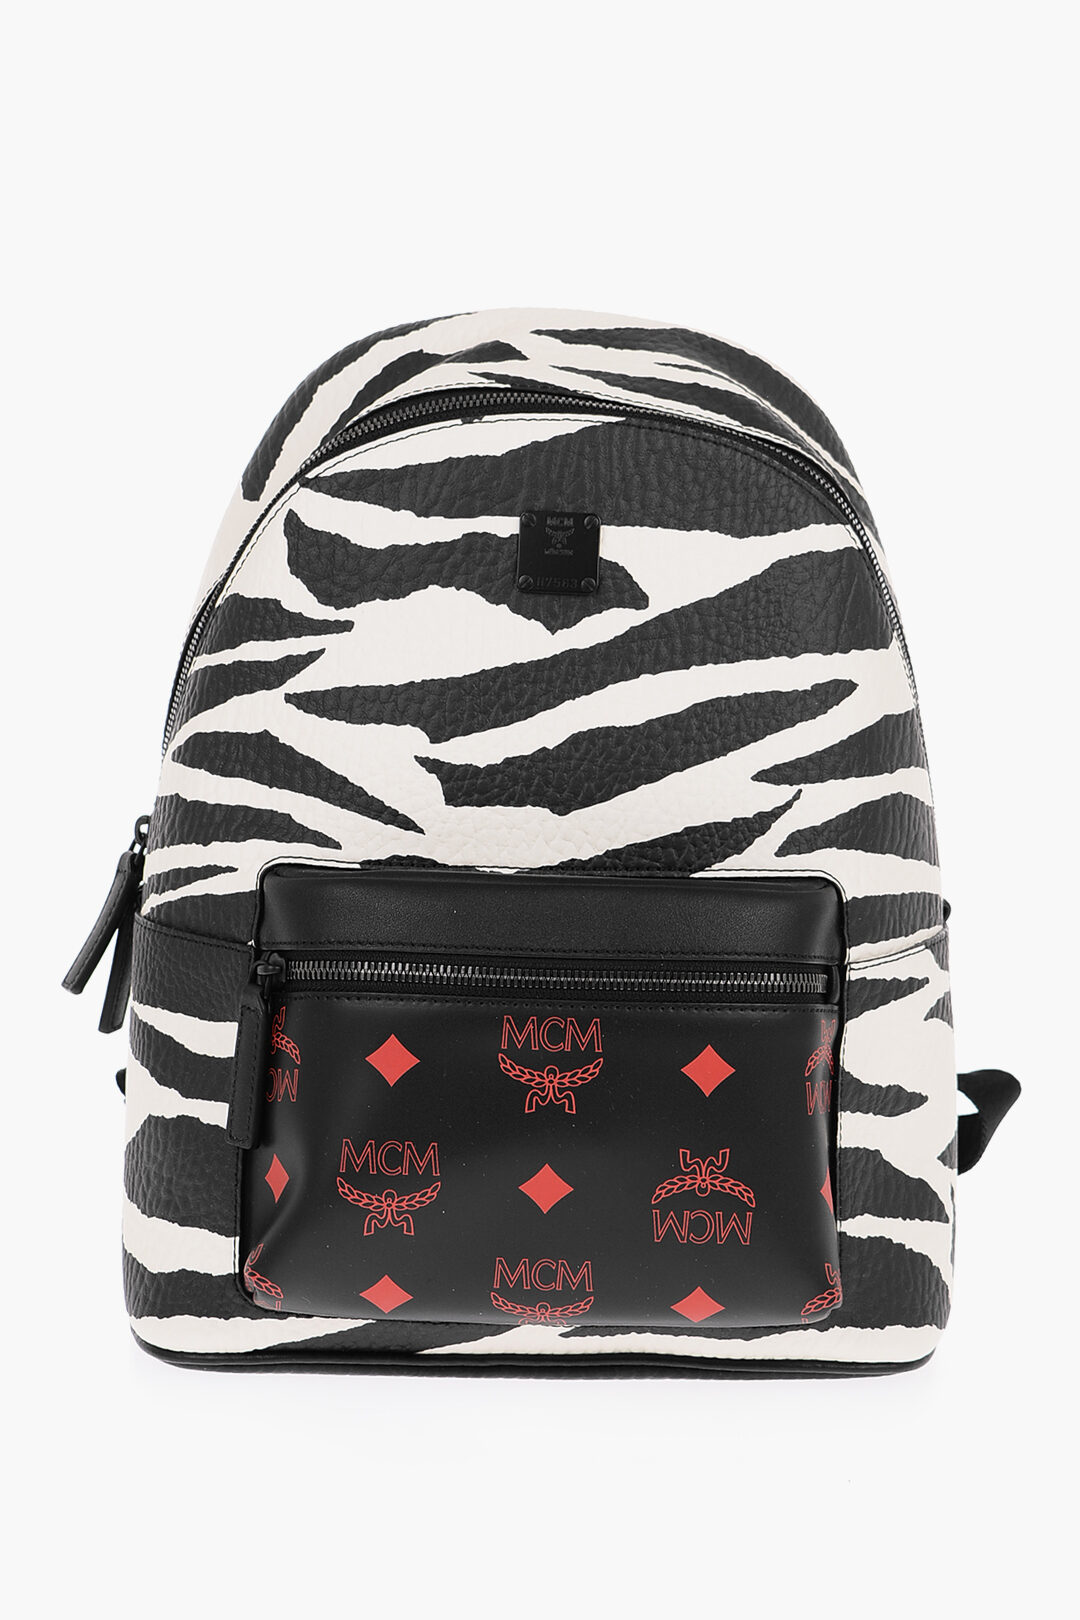 Mcm Men's Stark Backpack in Meta Safari Visetos - Black - Backpacks